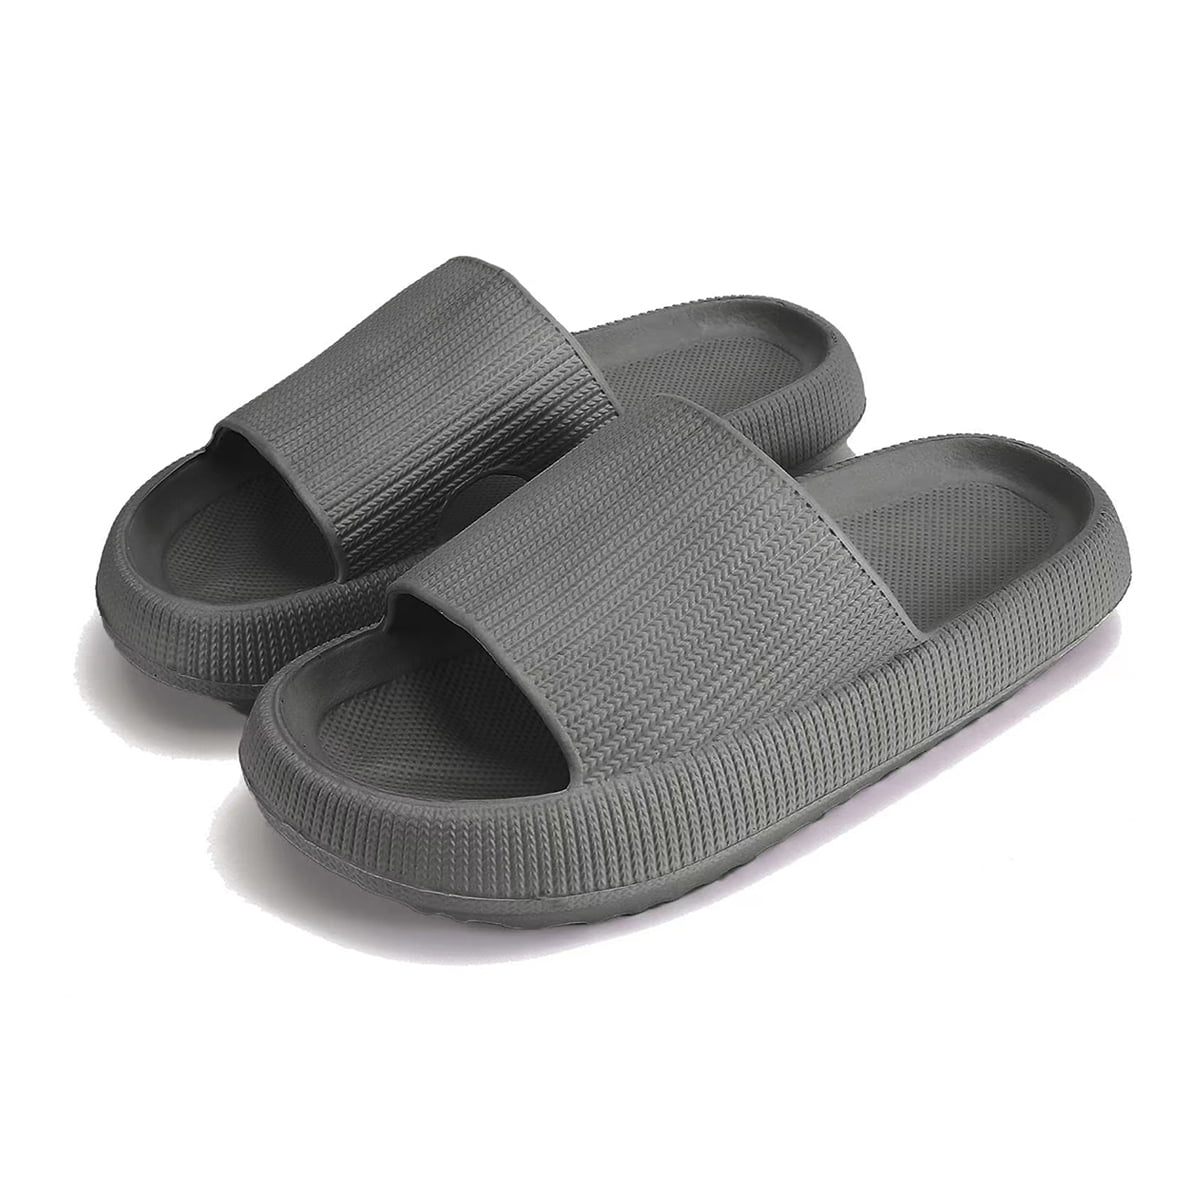 salon verkrachting Verzoekschrift Shower Shoes Slides Sandals Women Men House Slippers, Size W 10-11, M  8.5-9.5, Grey 42-43 - Walmart.com